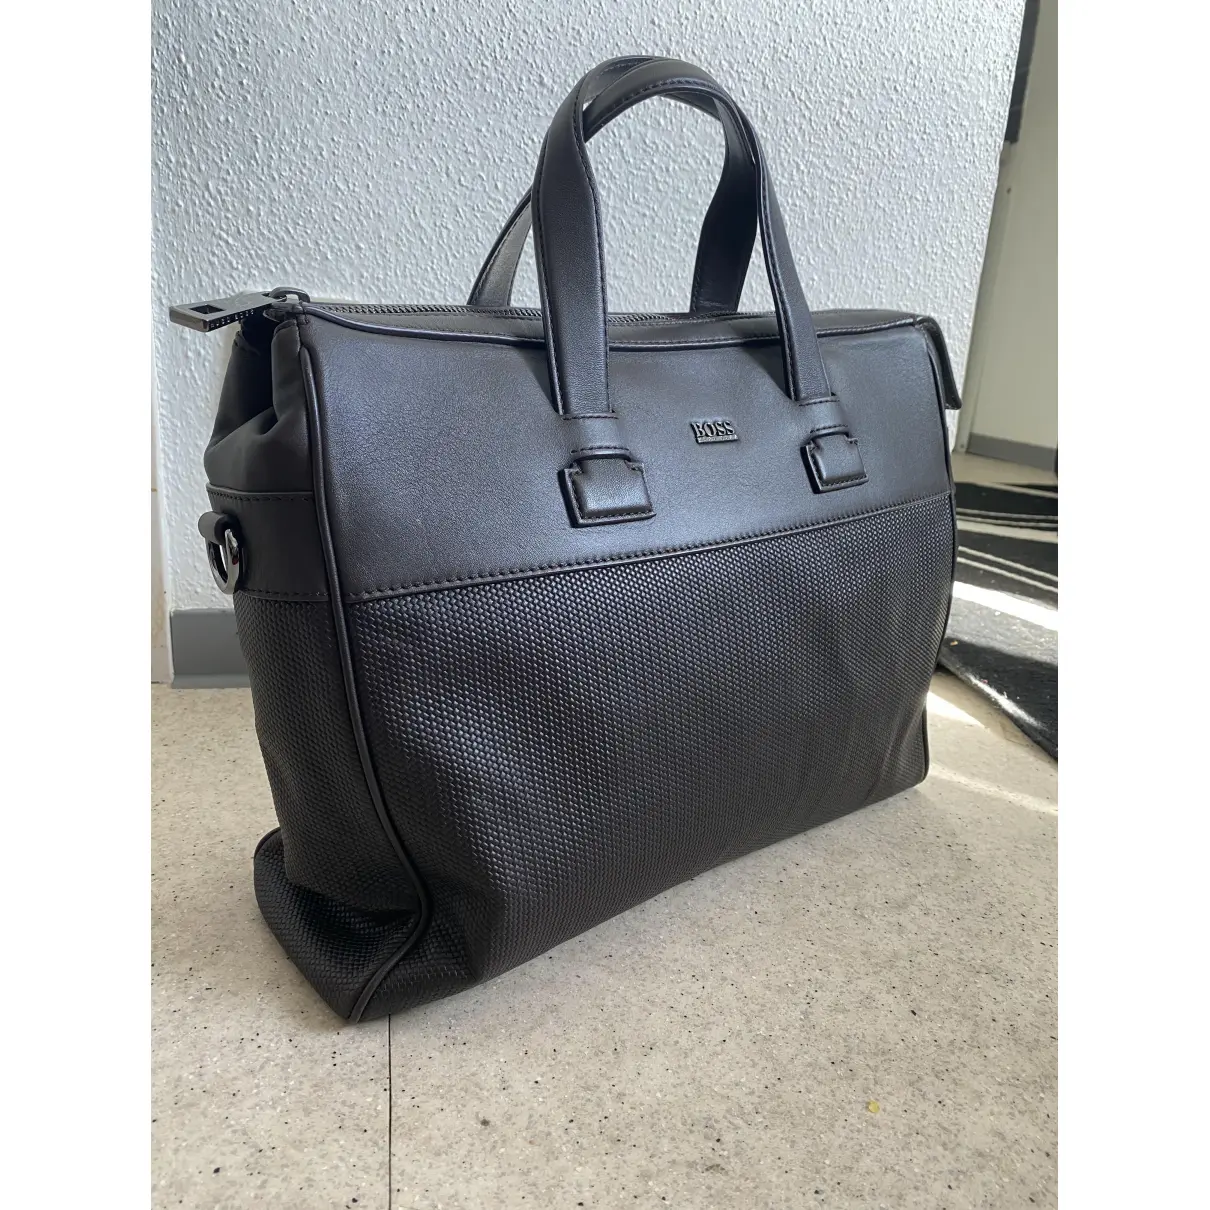 Buy Hugo Boss Leather travel bag online